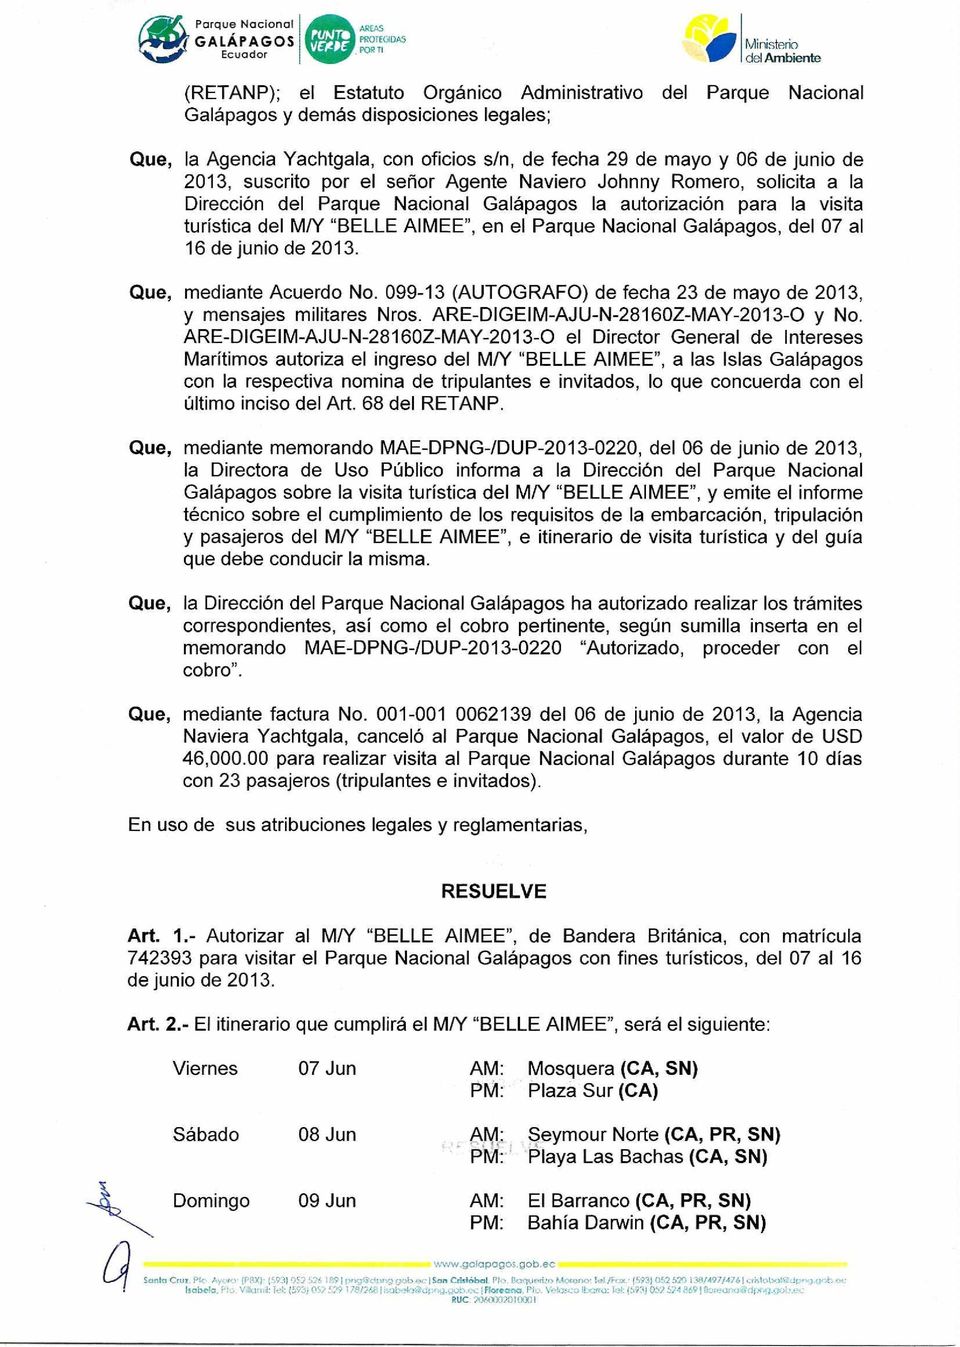 Galápagos, del 07 al 16 de junio de 2013. Que, mediante Acuerdo No. 099-13 (AUTOGRAFO) de fecha 23 de mayo de 2013, y mensajes militares Nros. ARE-DIGEIM-AJU-N-28160Z-MAY-2013-0 y No.